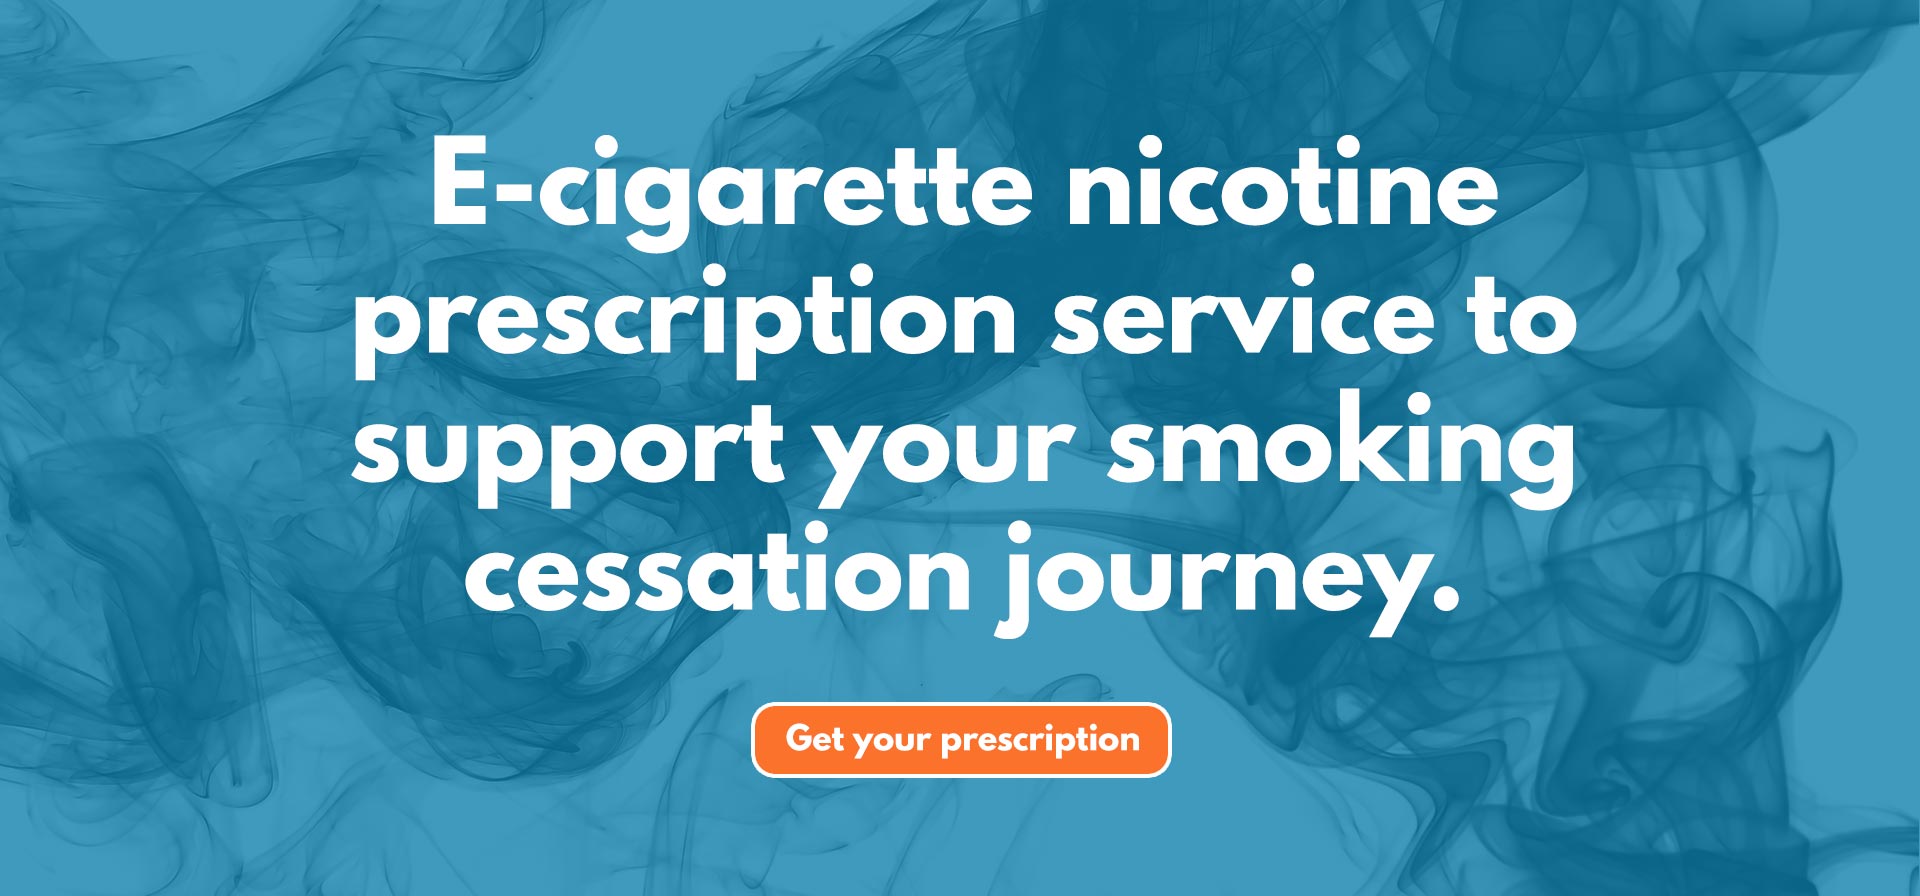 e cigarette nicotine prescription service